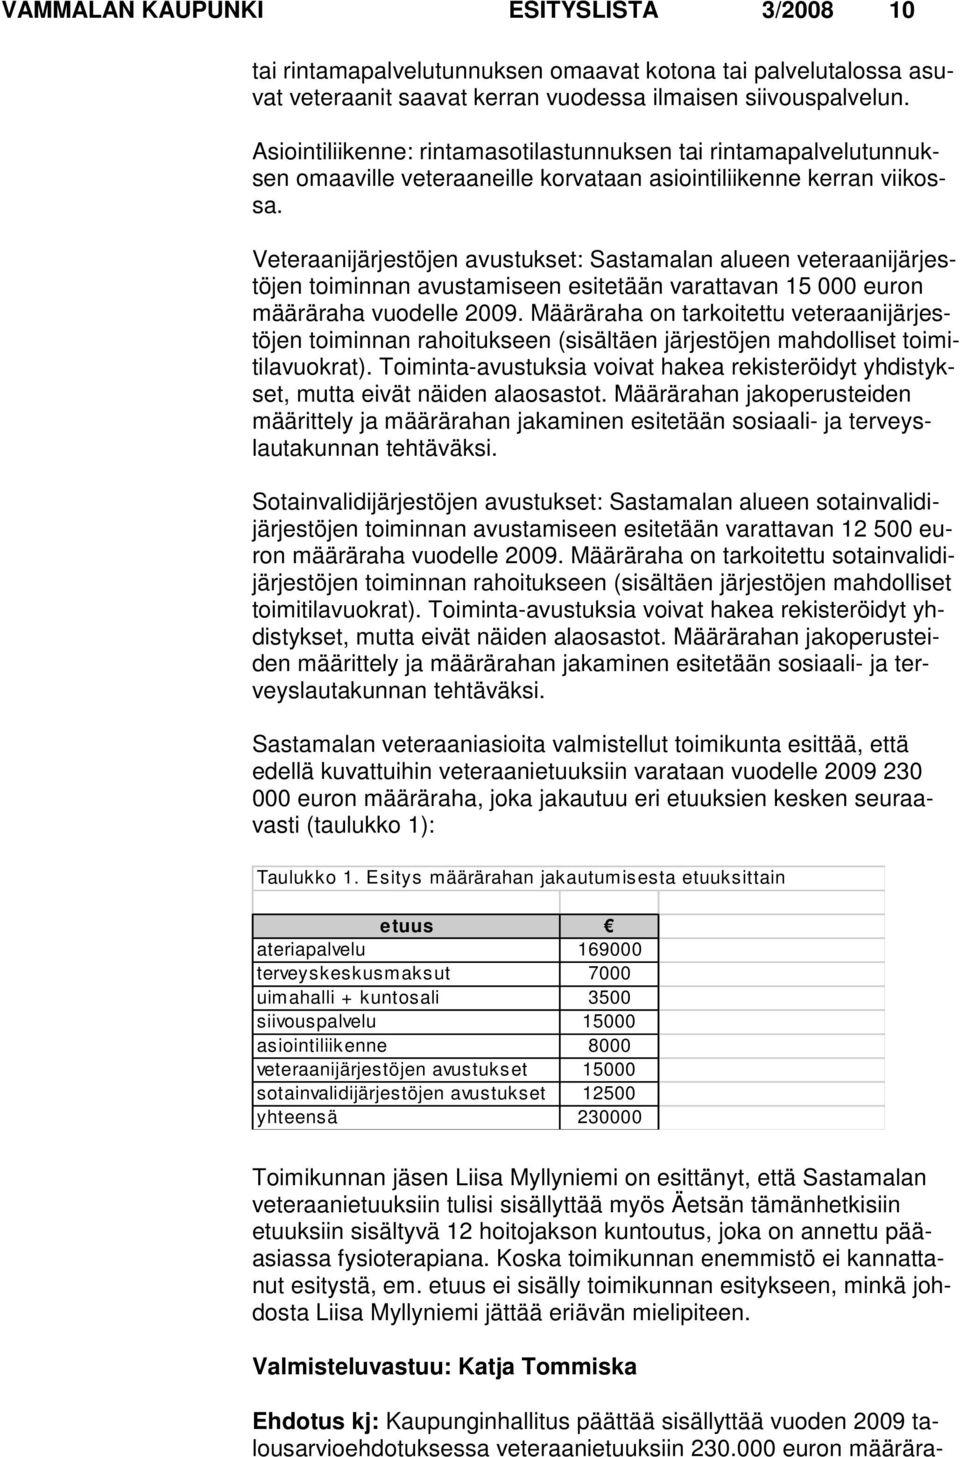 Veteraanijärjestöjen avustukset: Sastamalan alueen veteraanijärjestöjen toiminnan avustami seen esitetään varattavan 15 000 euron määräraha vuodelle 2009.